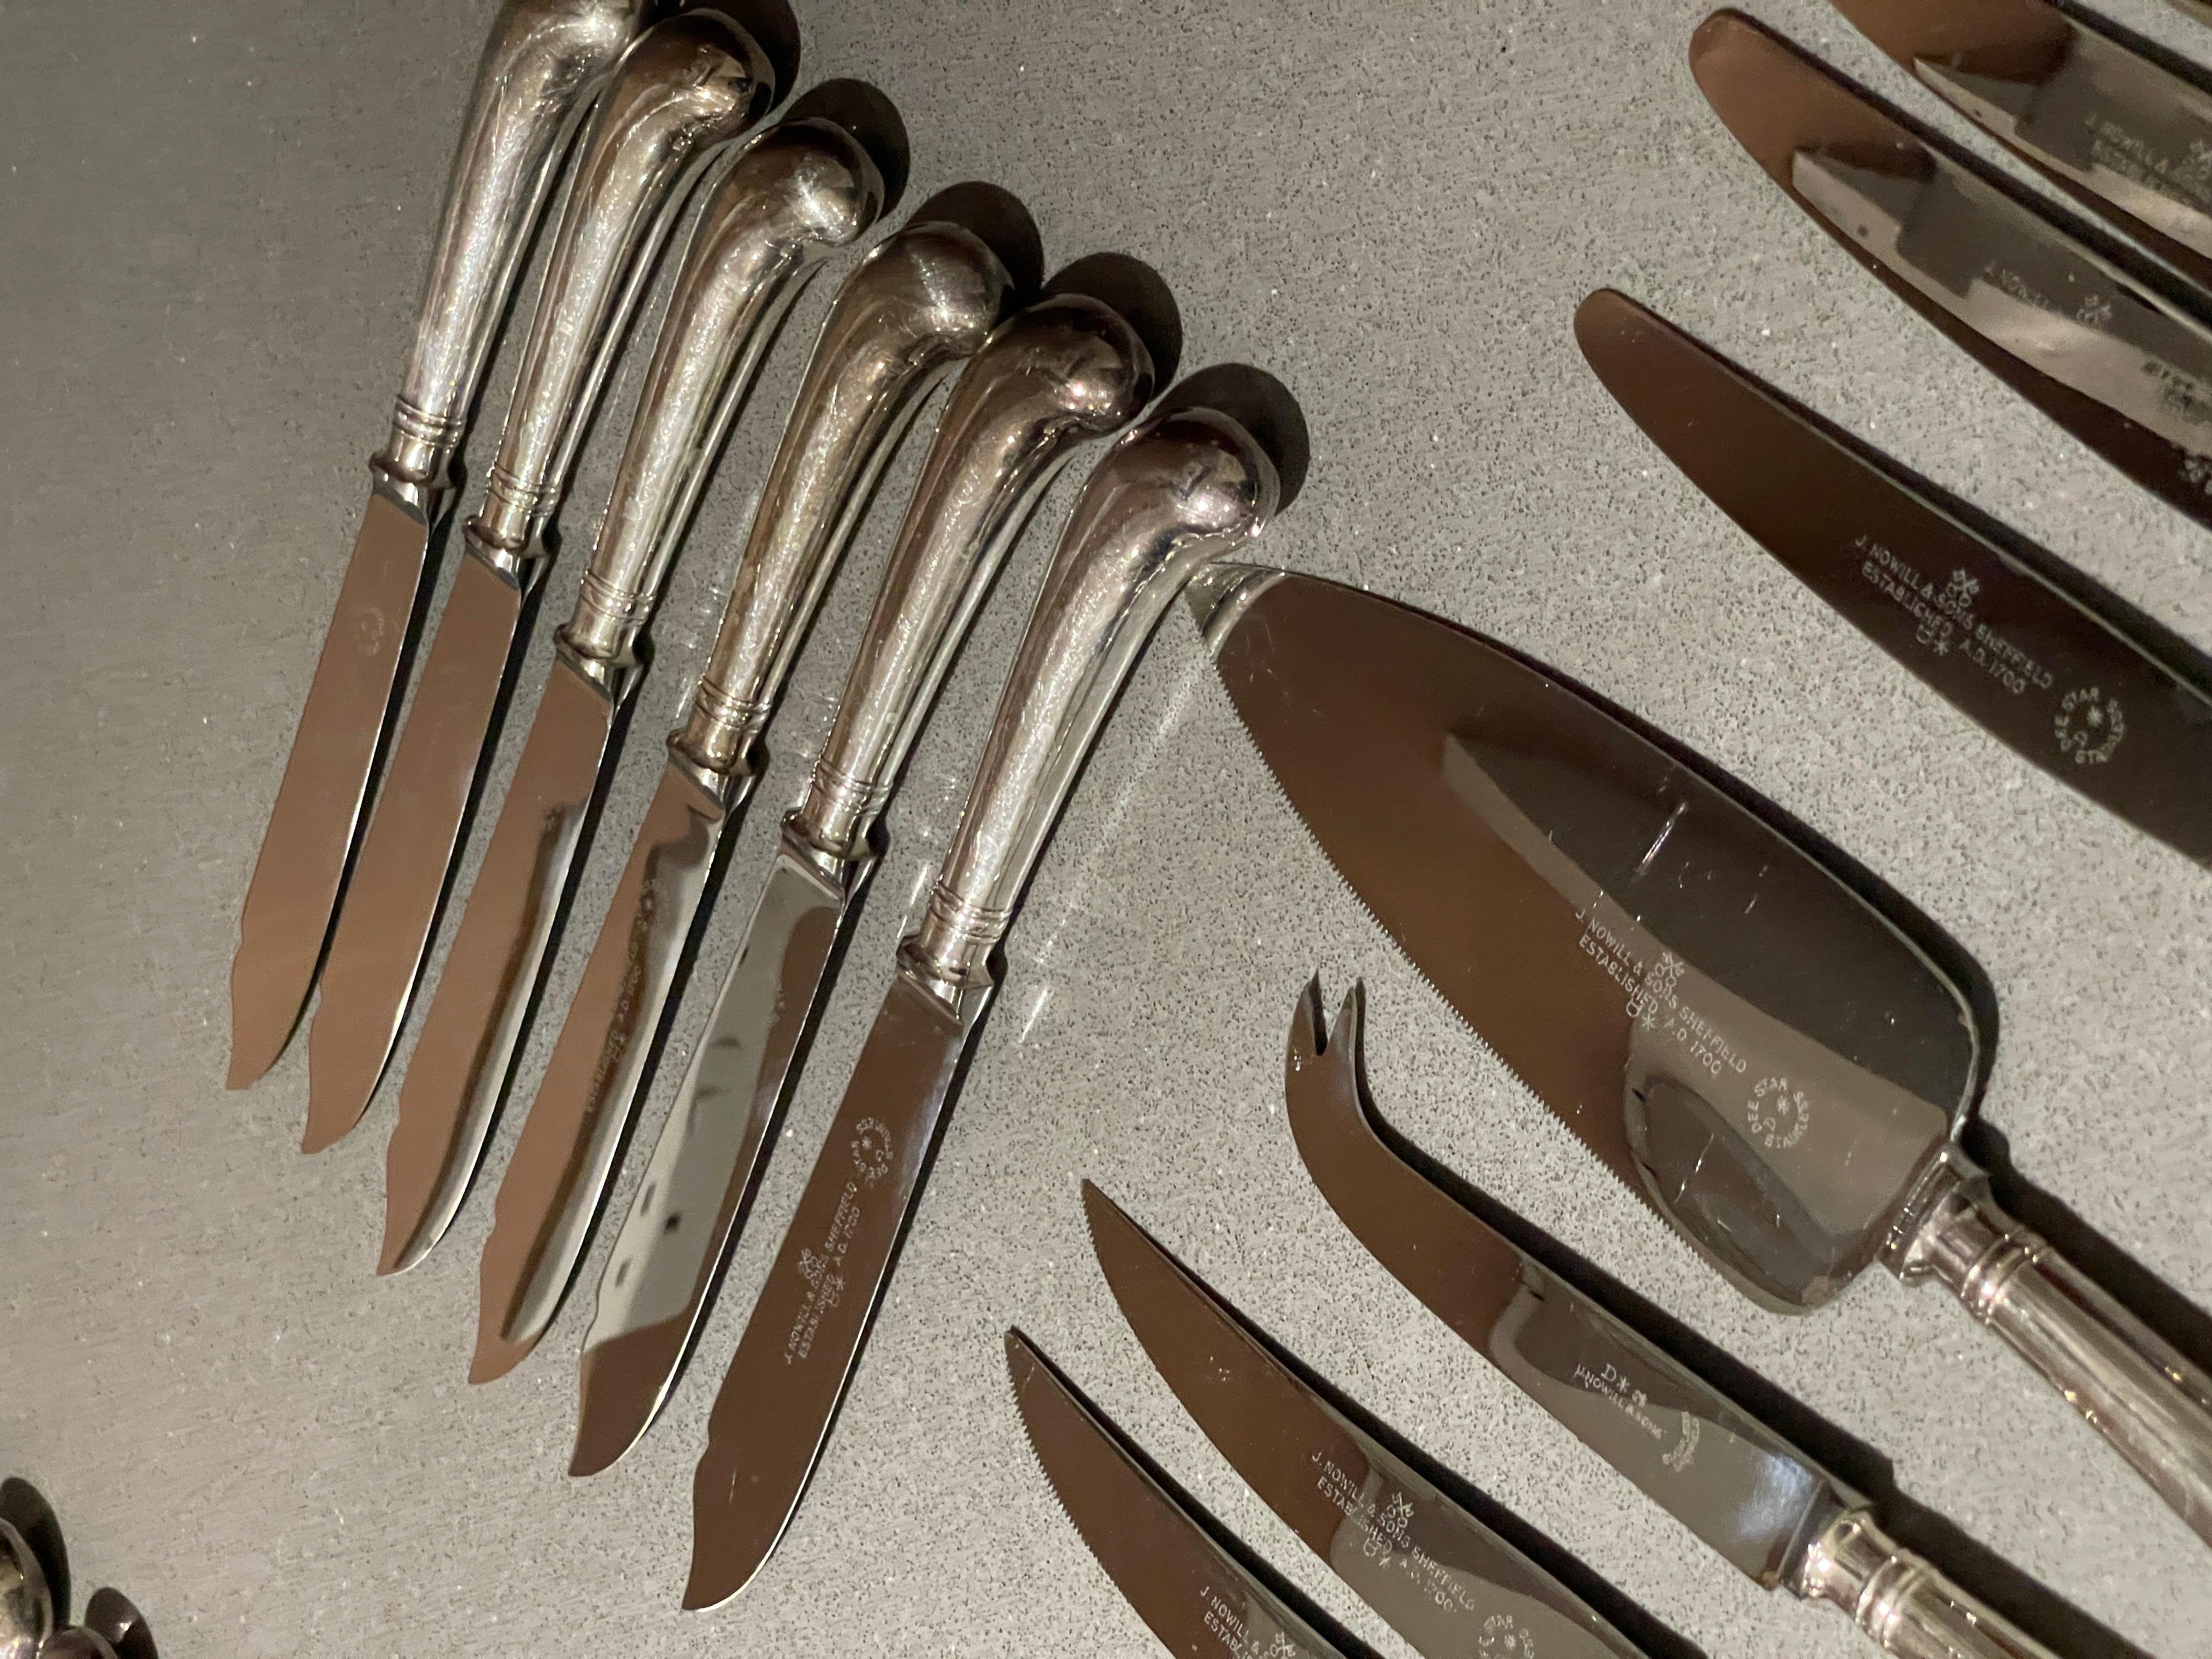 sheffield cutlery set